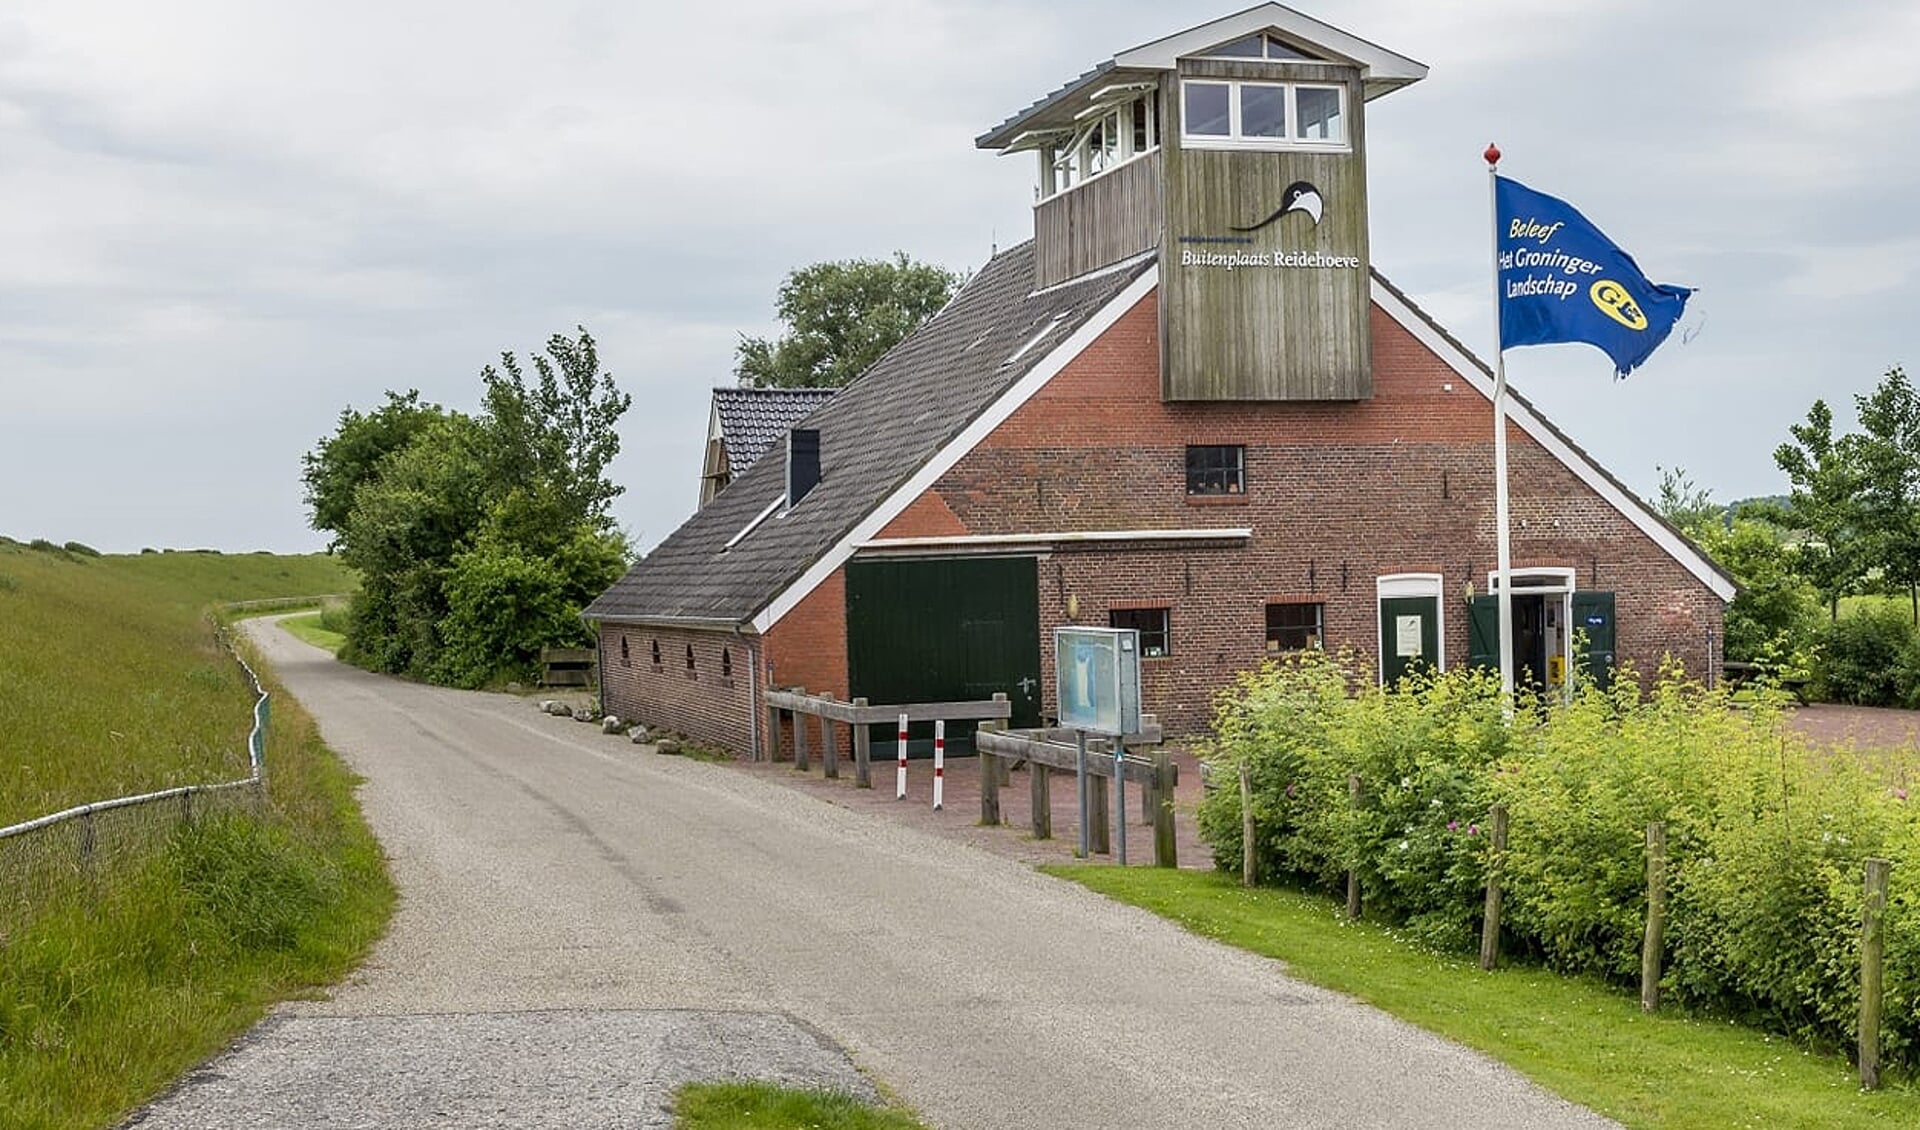 Bezoekerscentrum Dollard in Termunten is het verzamelpunt voor de wandelaars (foto Het Groninger Landschap).